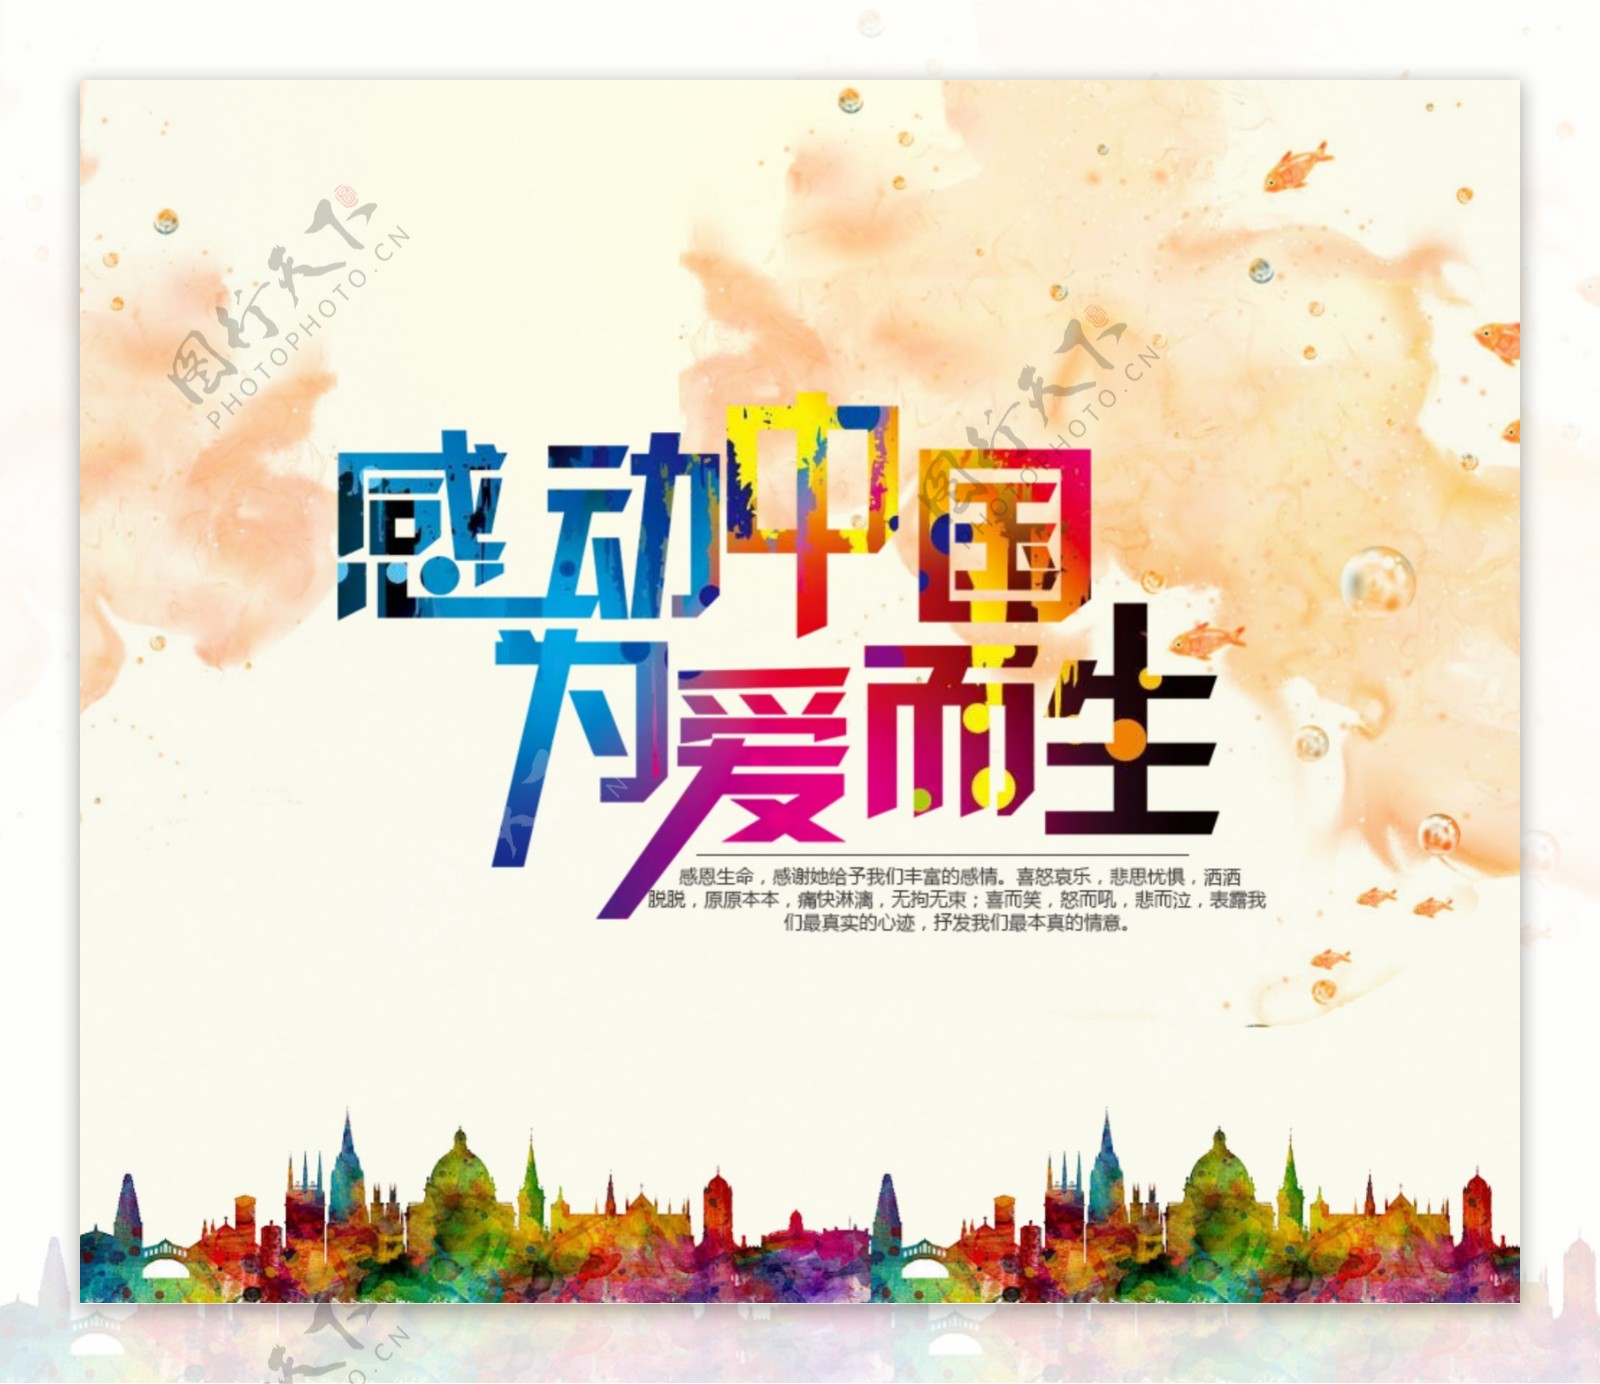 感动中国海报设计